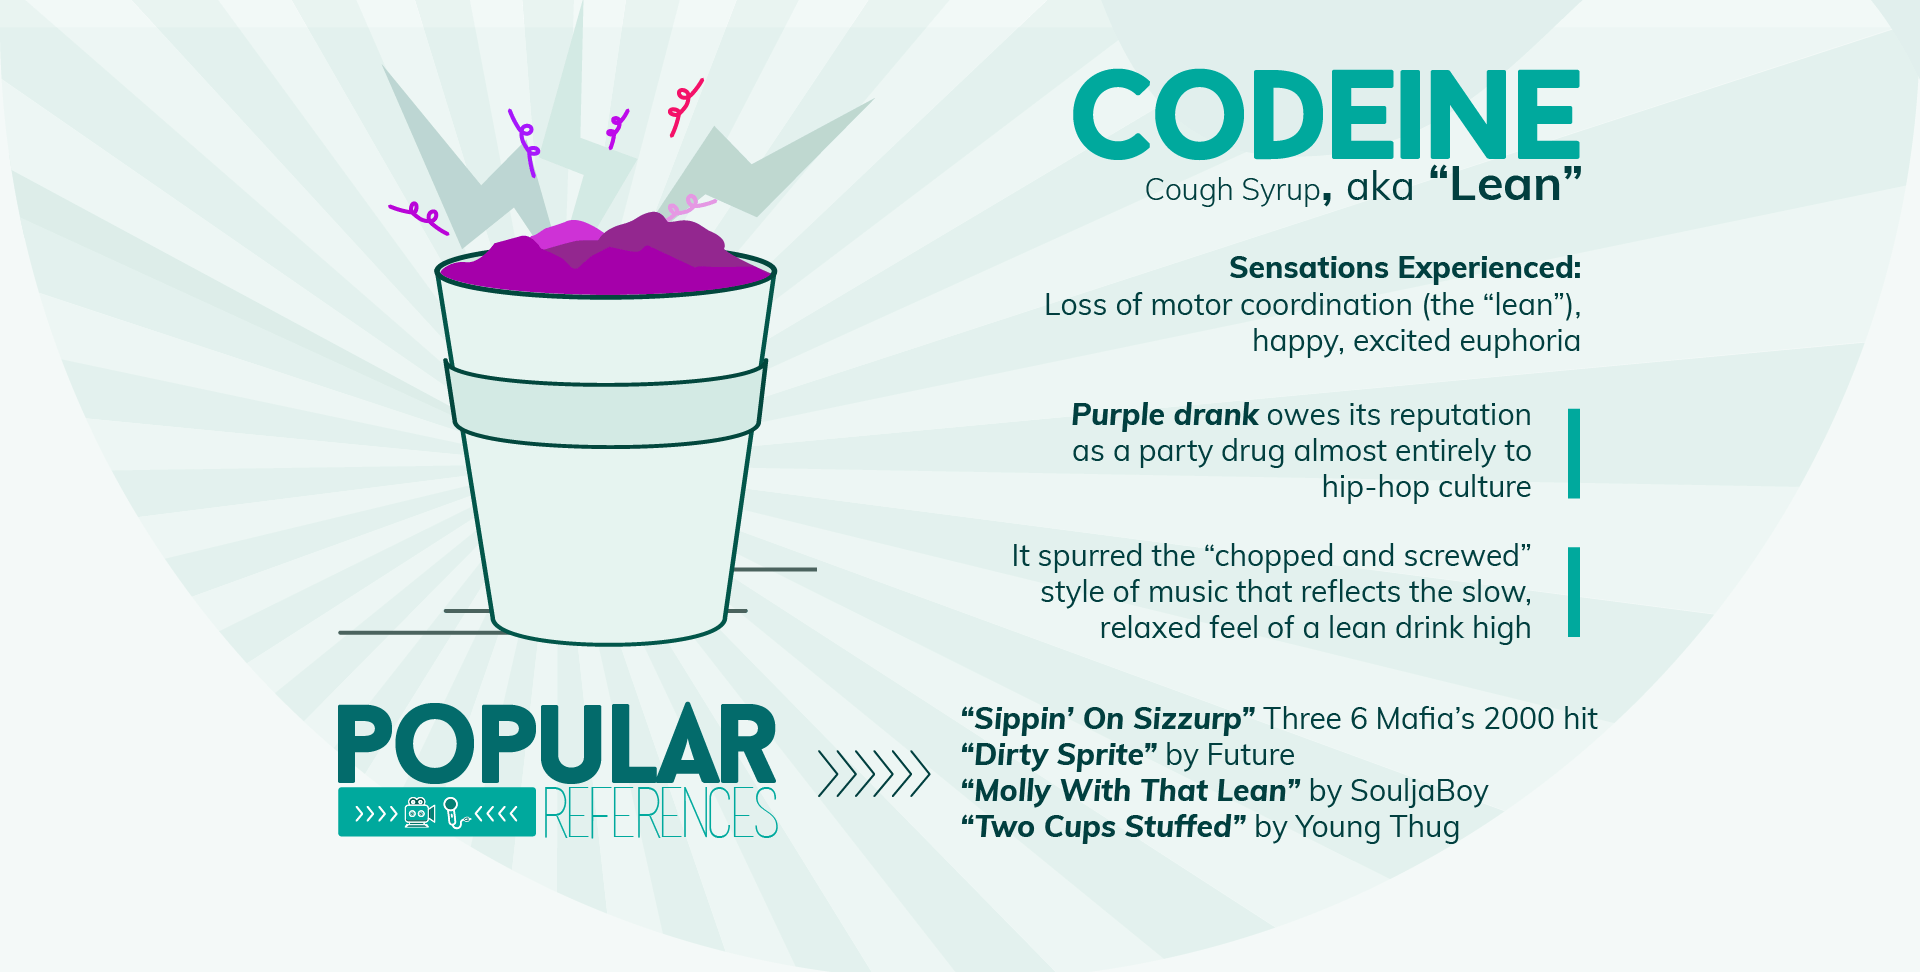 Codeine in Popular Culture